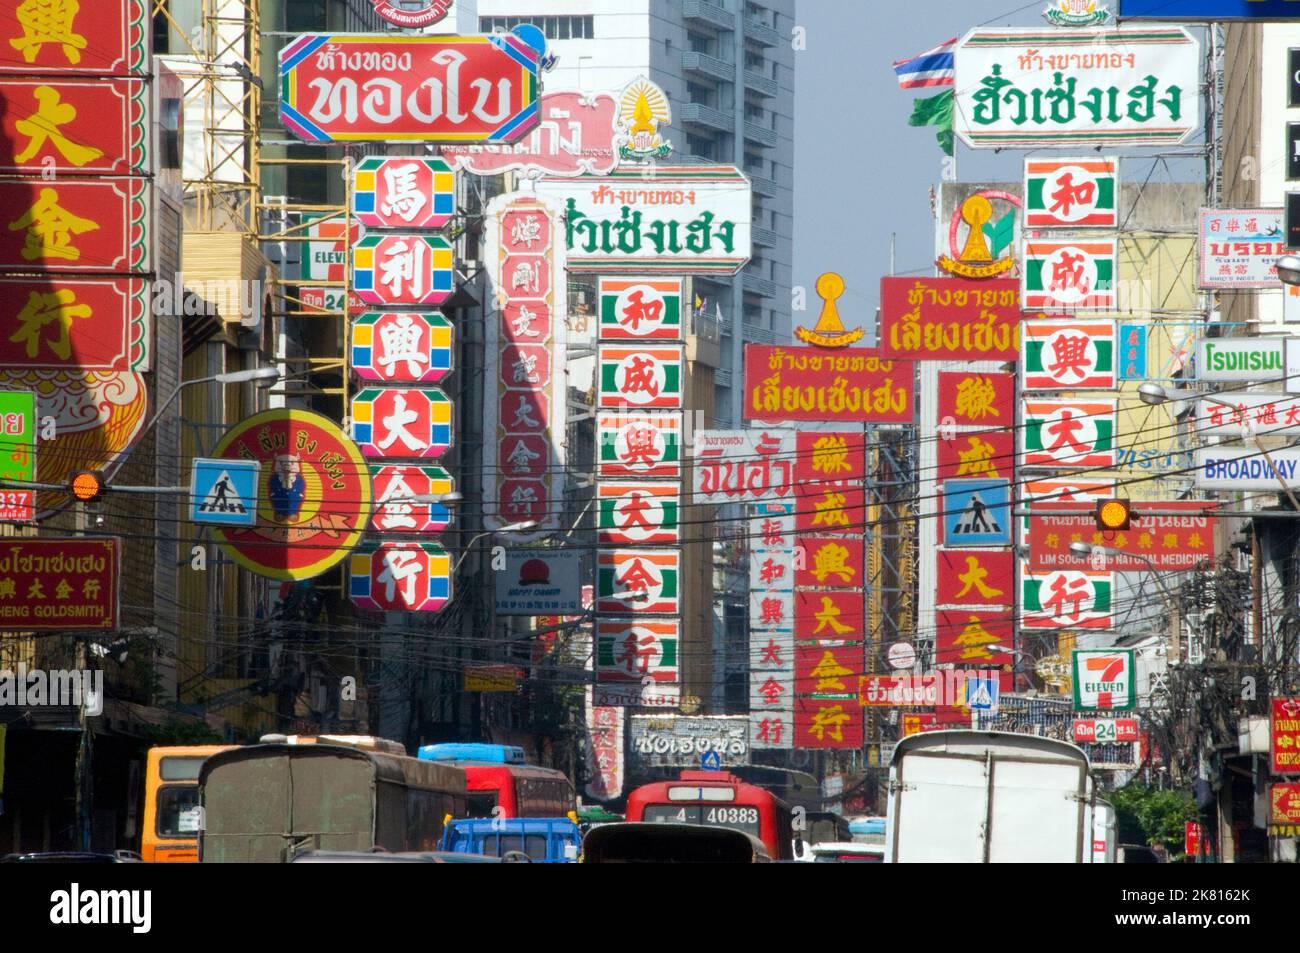 Thailand: Verkehr und Beschilderung auf Yaowarat Road, Chinatown, Bangkok (2008). Bangkoks Chinatown ist eines der größten Chinatowns der Welt. Sie wurde 1782 gegründet, als die Stadt als Hauptstadt des Rattanakosin-Königreichs gegründet wurde und diente als Heimat der hauptsächlich aus Teochew stammenden chinesischen Bevölkerung, die bald zur dominierenden ethnischen Gruppe der Stadt wurde. Stockfoto